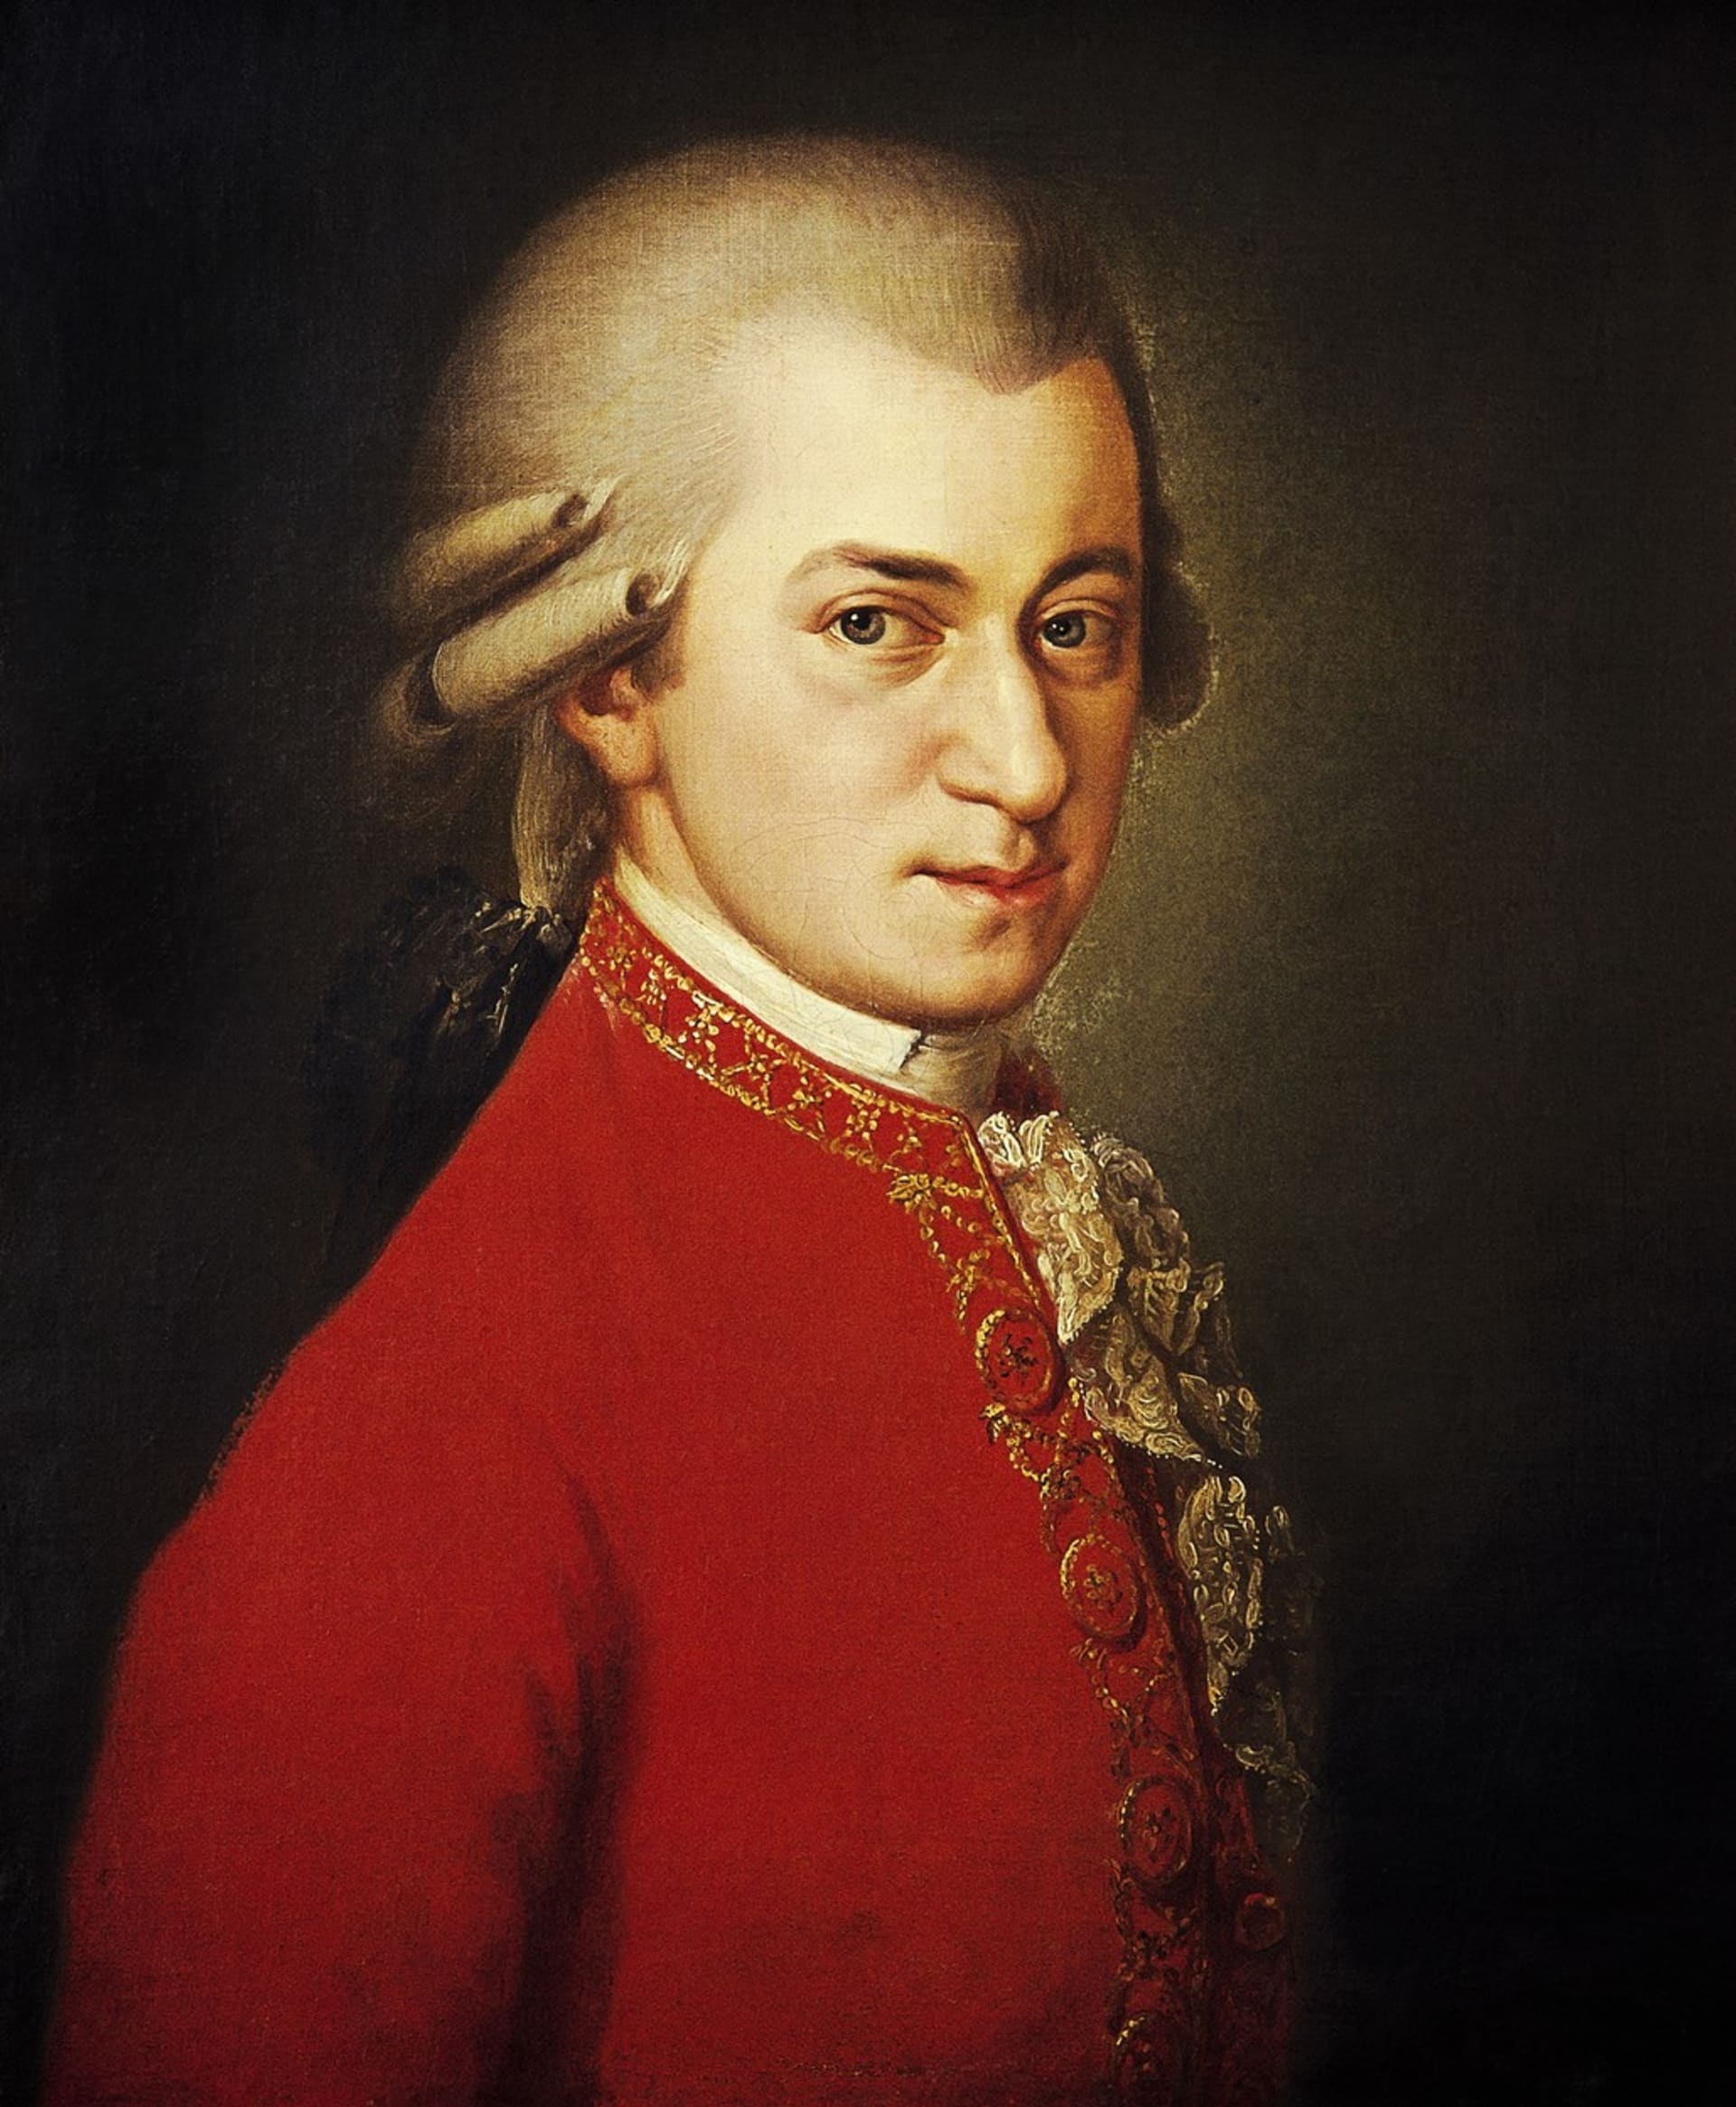 Wolfgang Amadeus Mozart bývá zmiňován jako nejslavnější skladatel všech dob